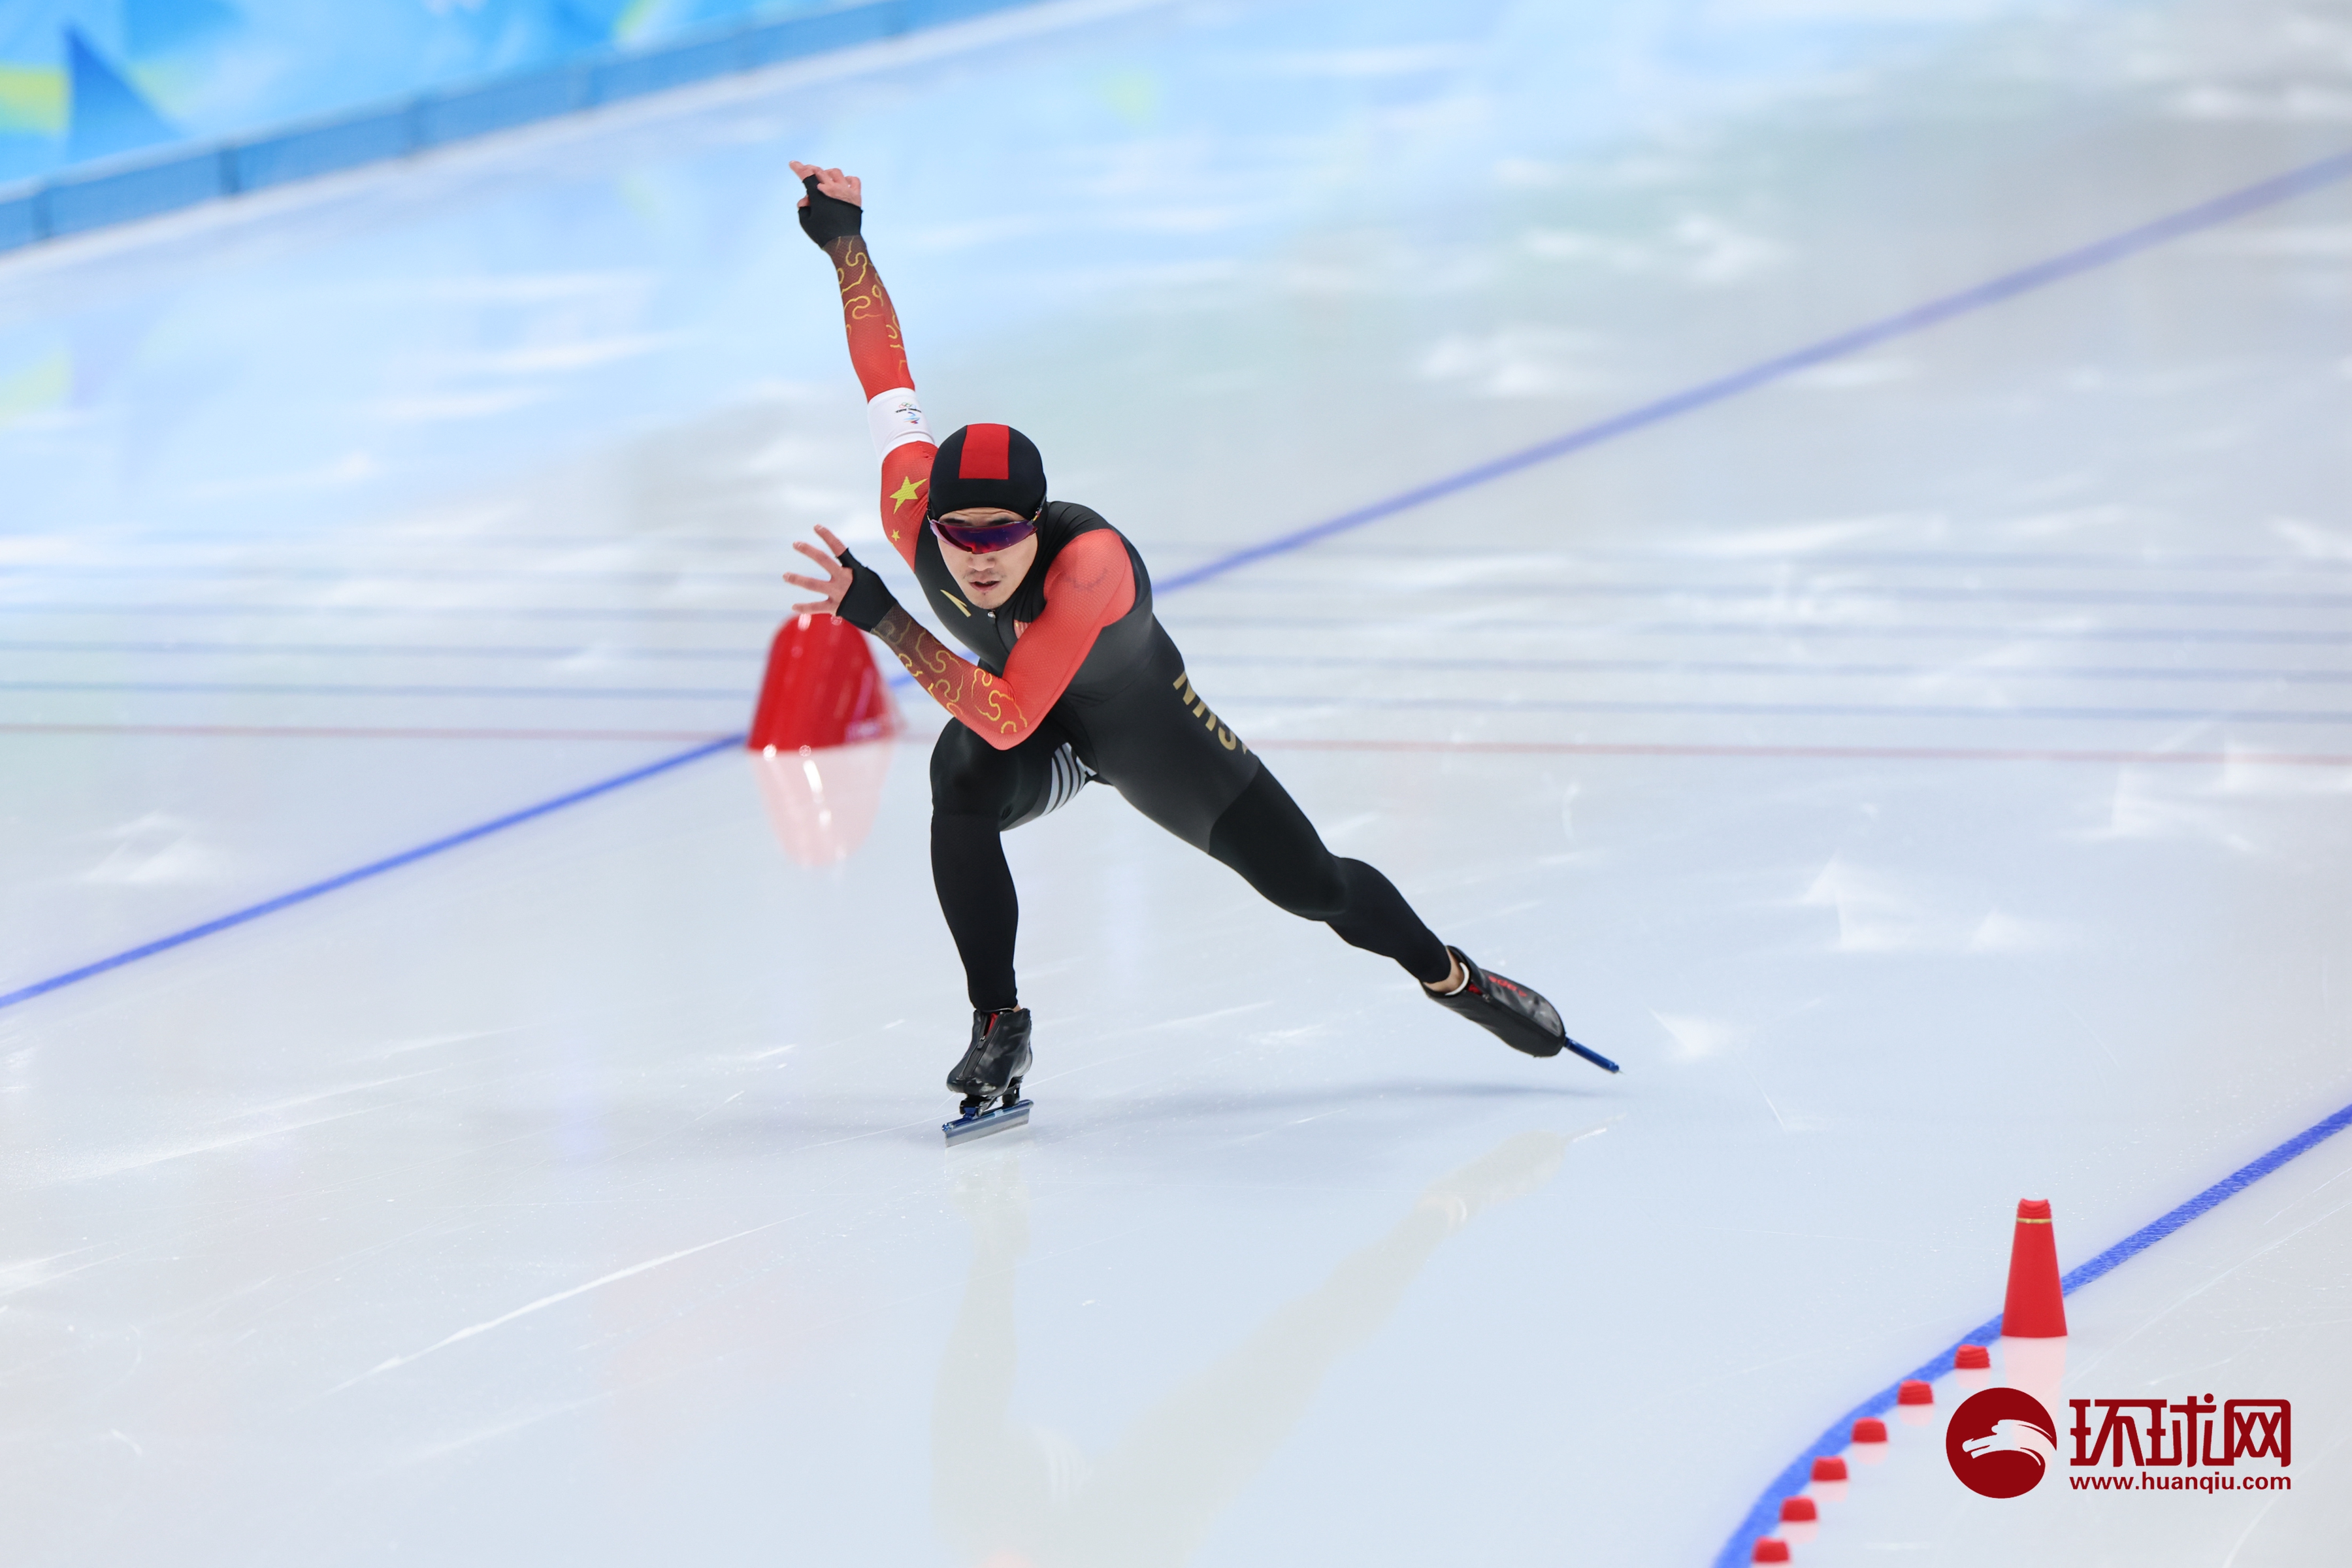 破奥运会纪录!高亭宇获速度滑冰男子500米冠军